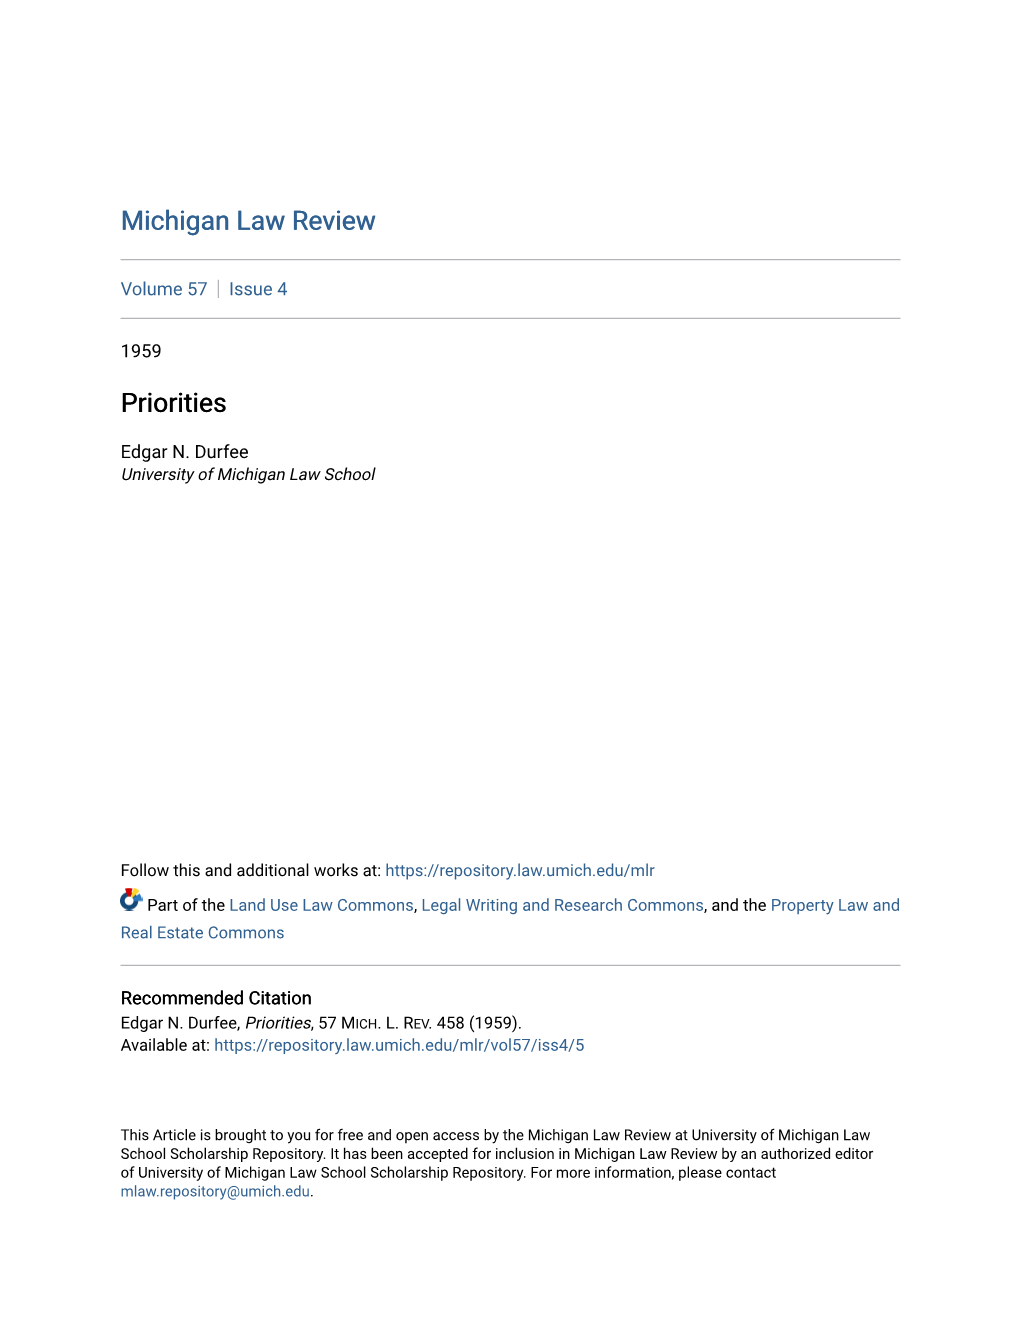 Michigan Law Review Priorities